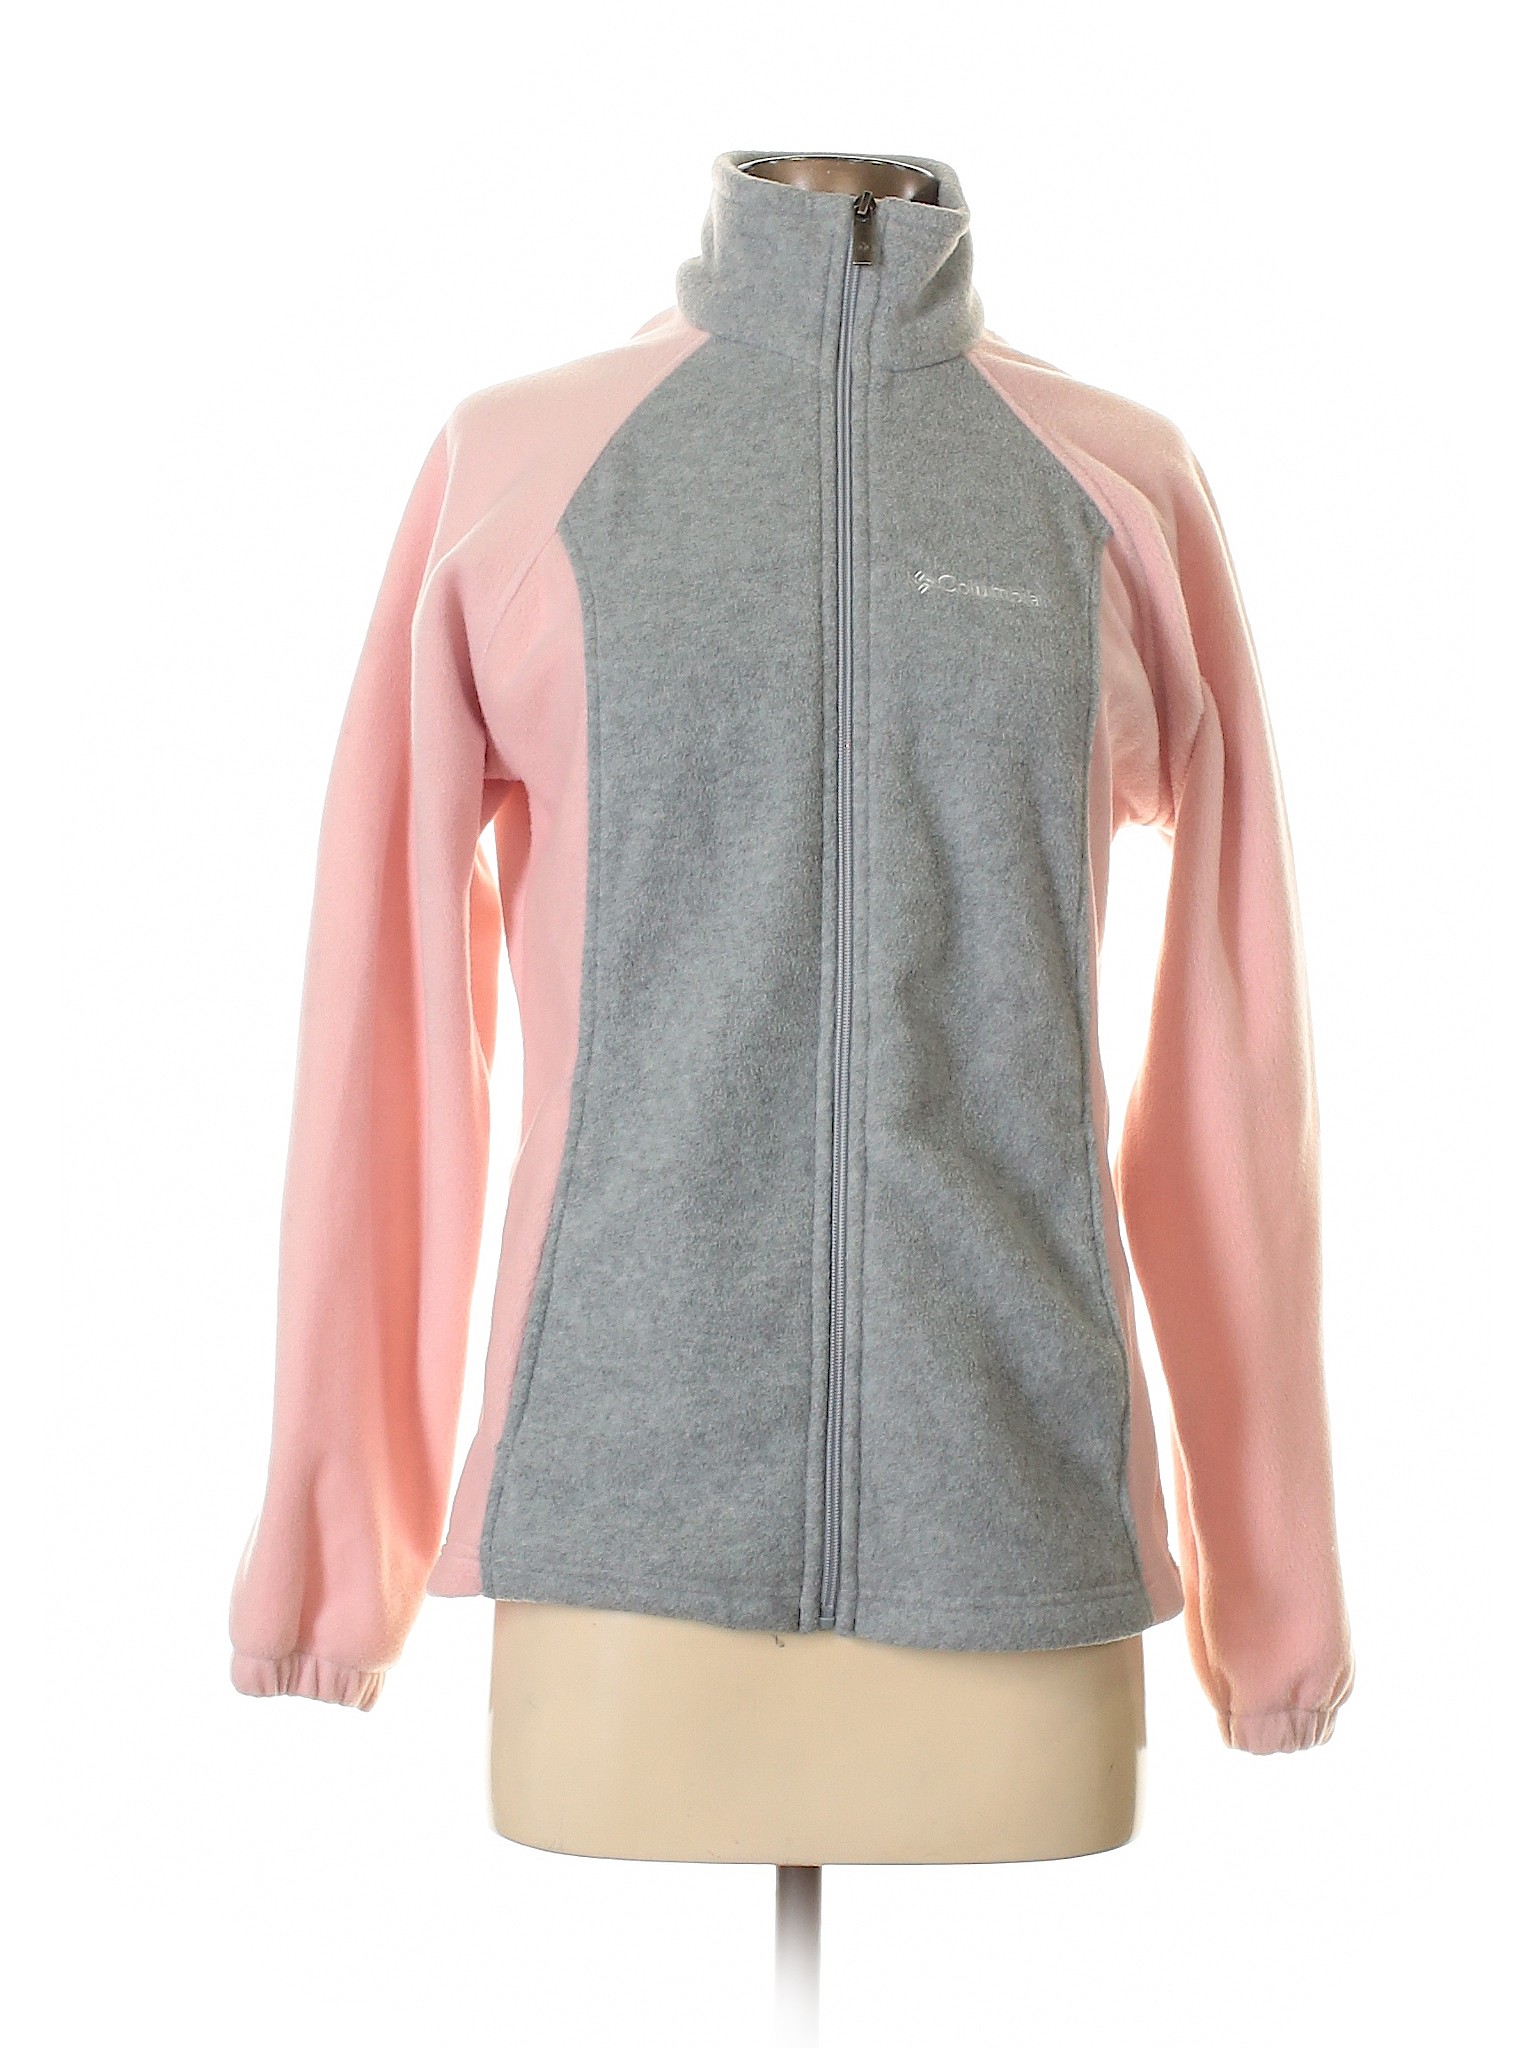 Columbia Women Pink Fleece S | eBay